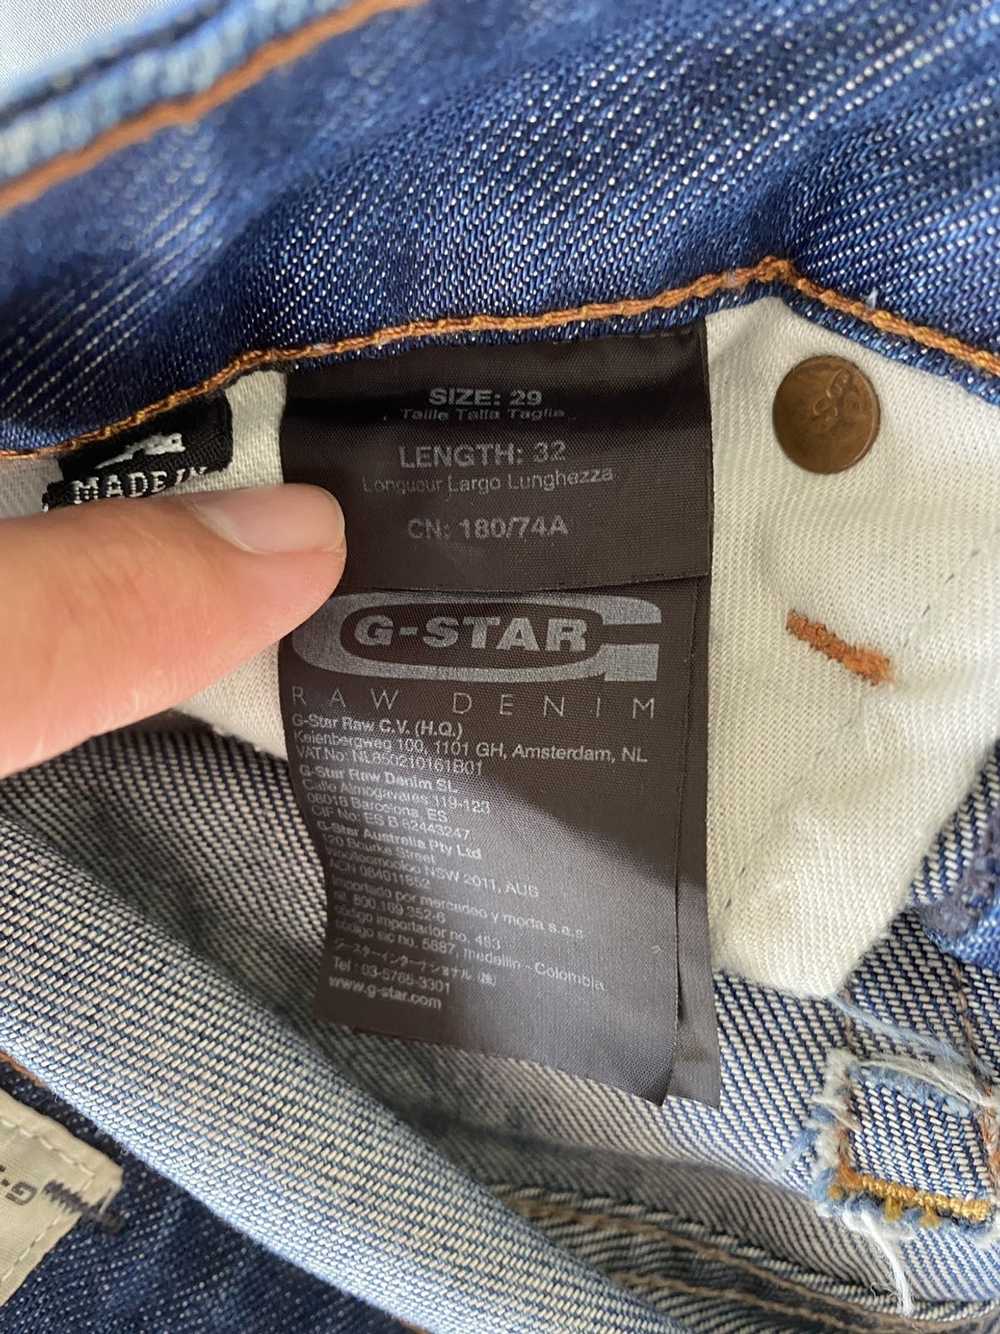 Gstar G-star jeans 3301. - image 5